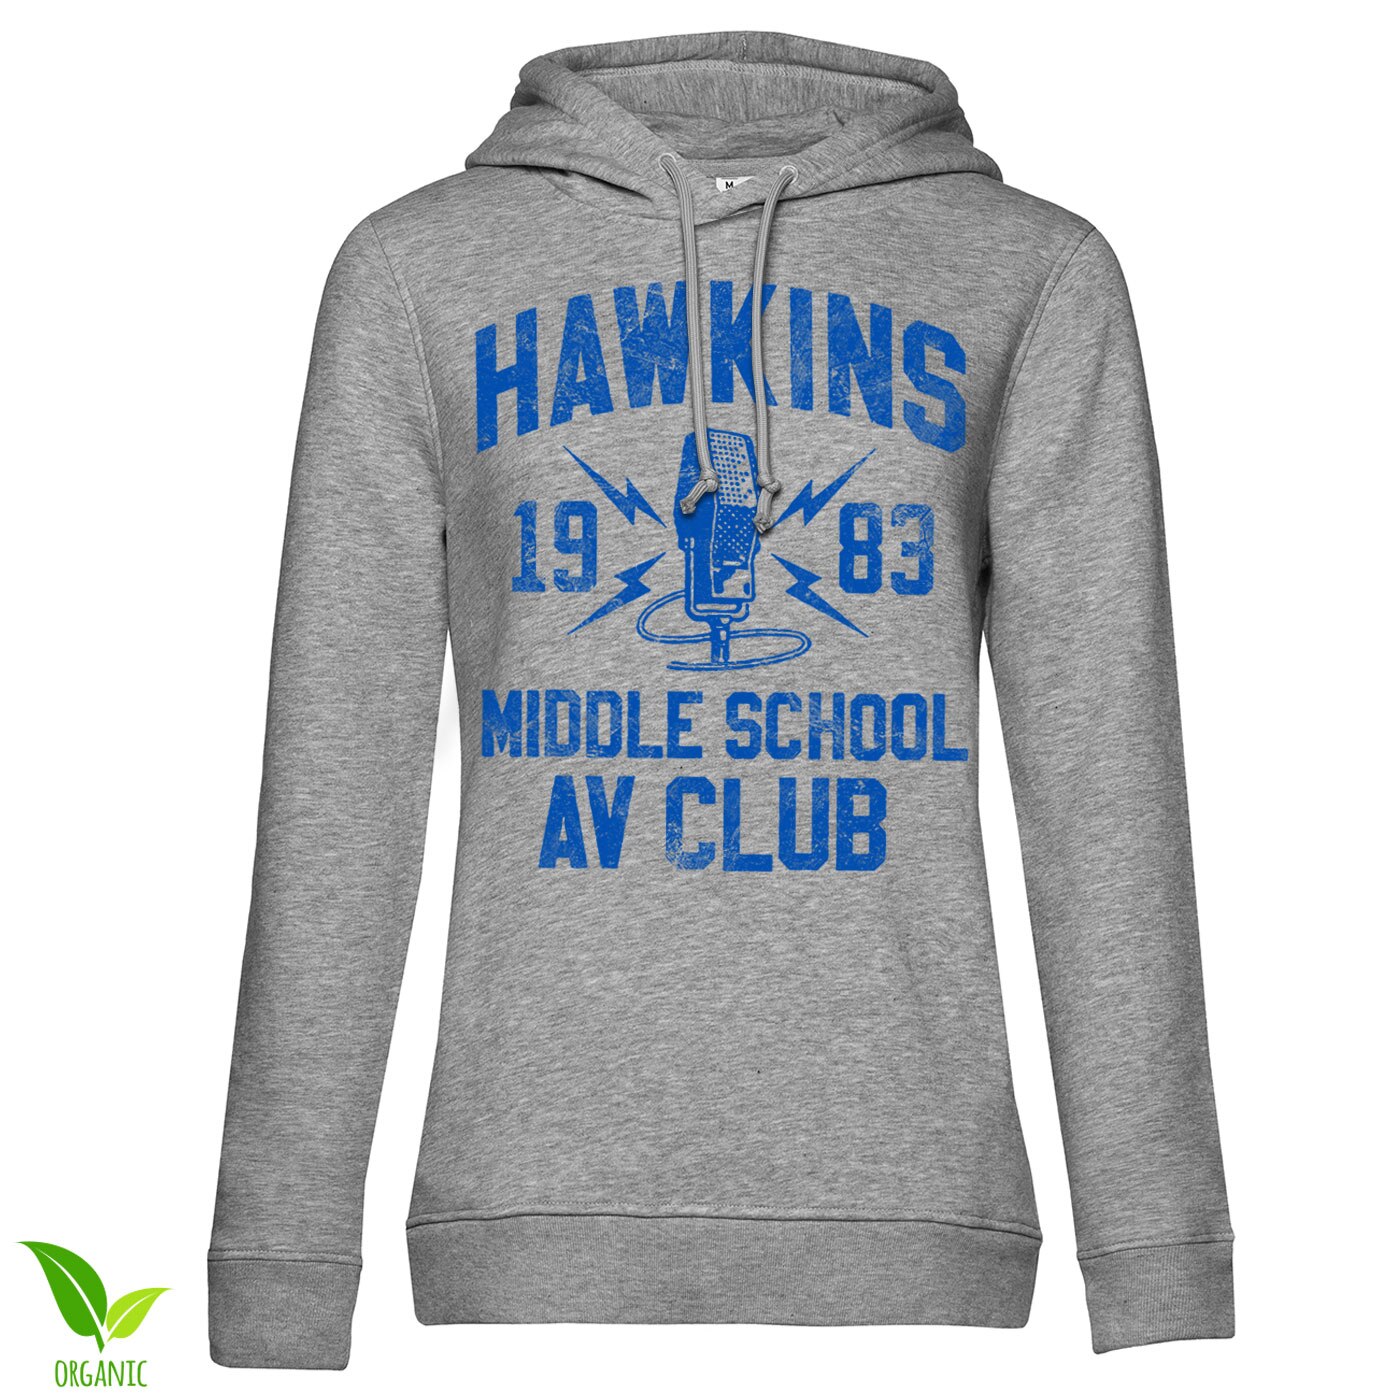 Hawkins 1983 Middle School AV Club Girls Hoodie